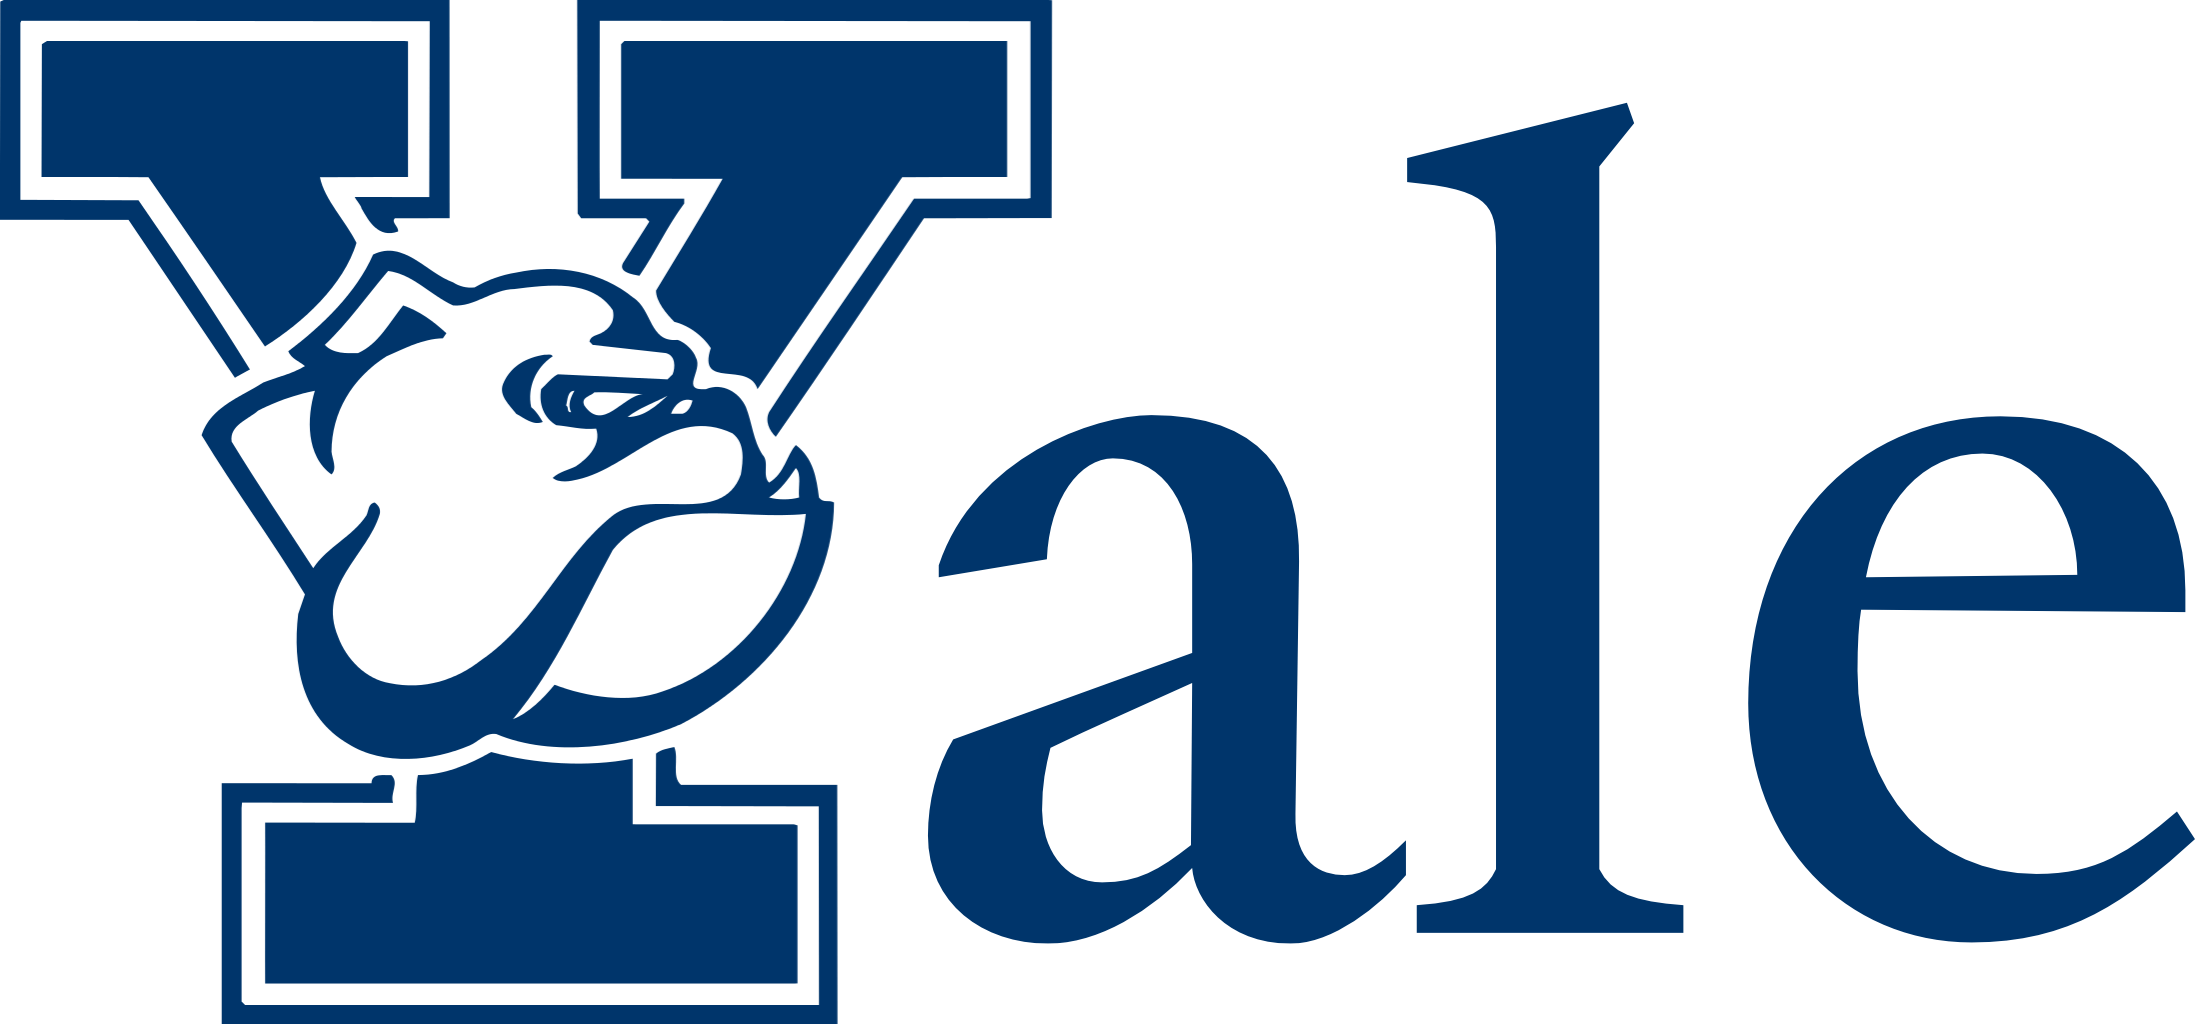 Yale Logo - yale-logo - Foundation For Teaching Economics